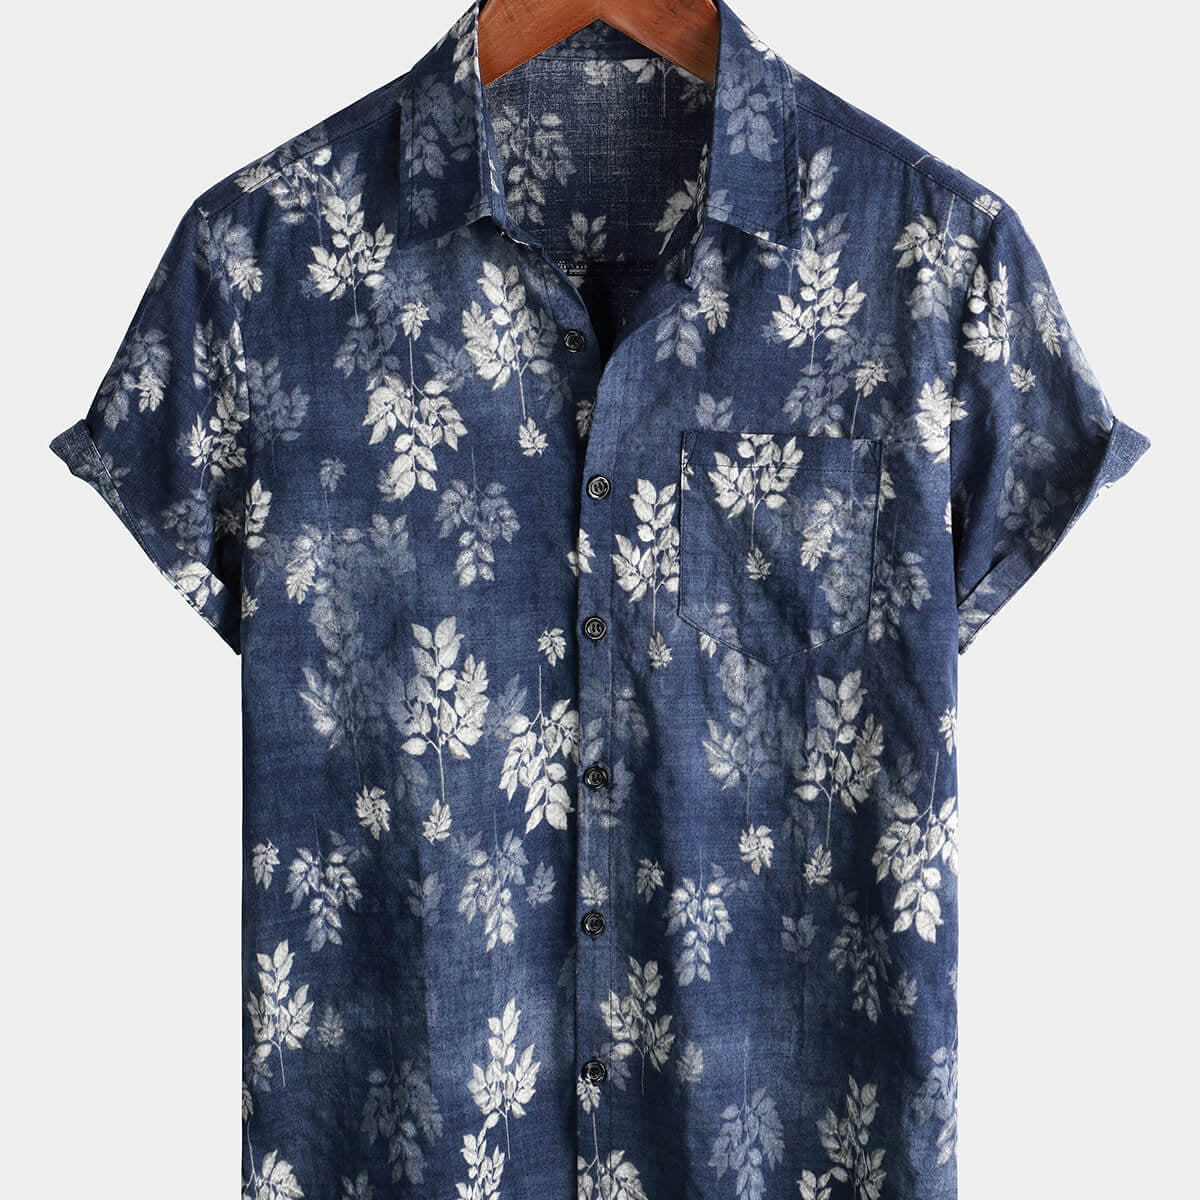 Camisa hawaiana con botones de color azul marino retro de verano de manga corta vintage de los años 70 con bolsillo de algodón para hombre